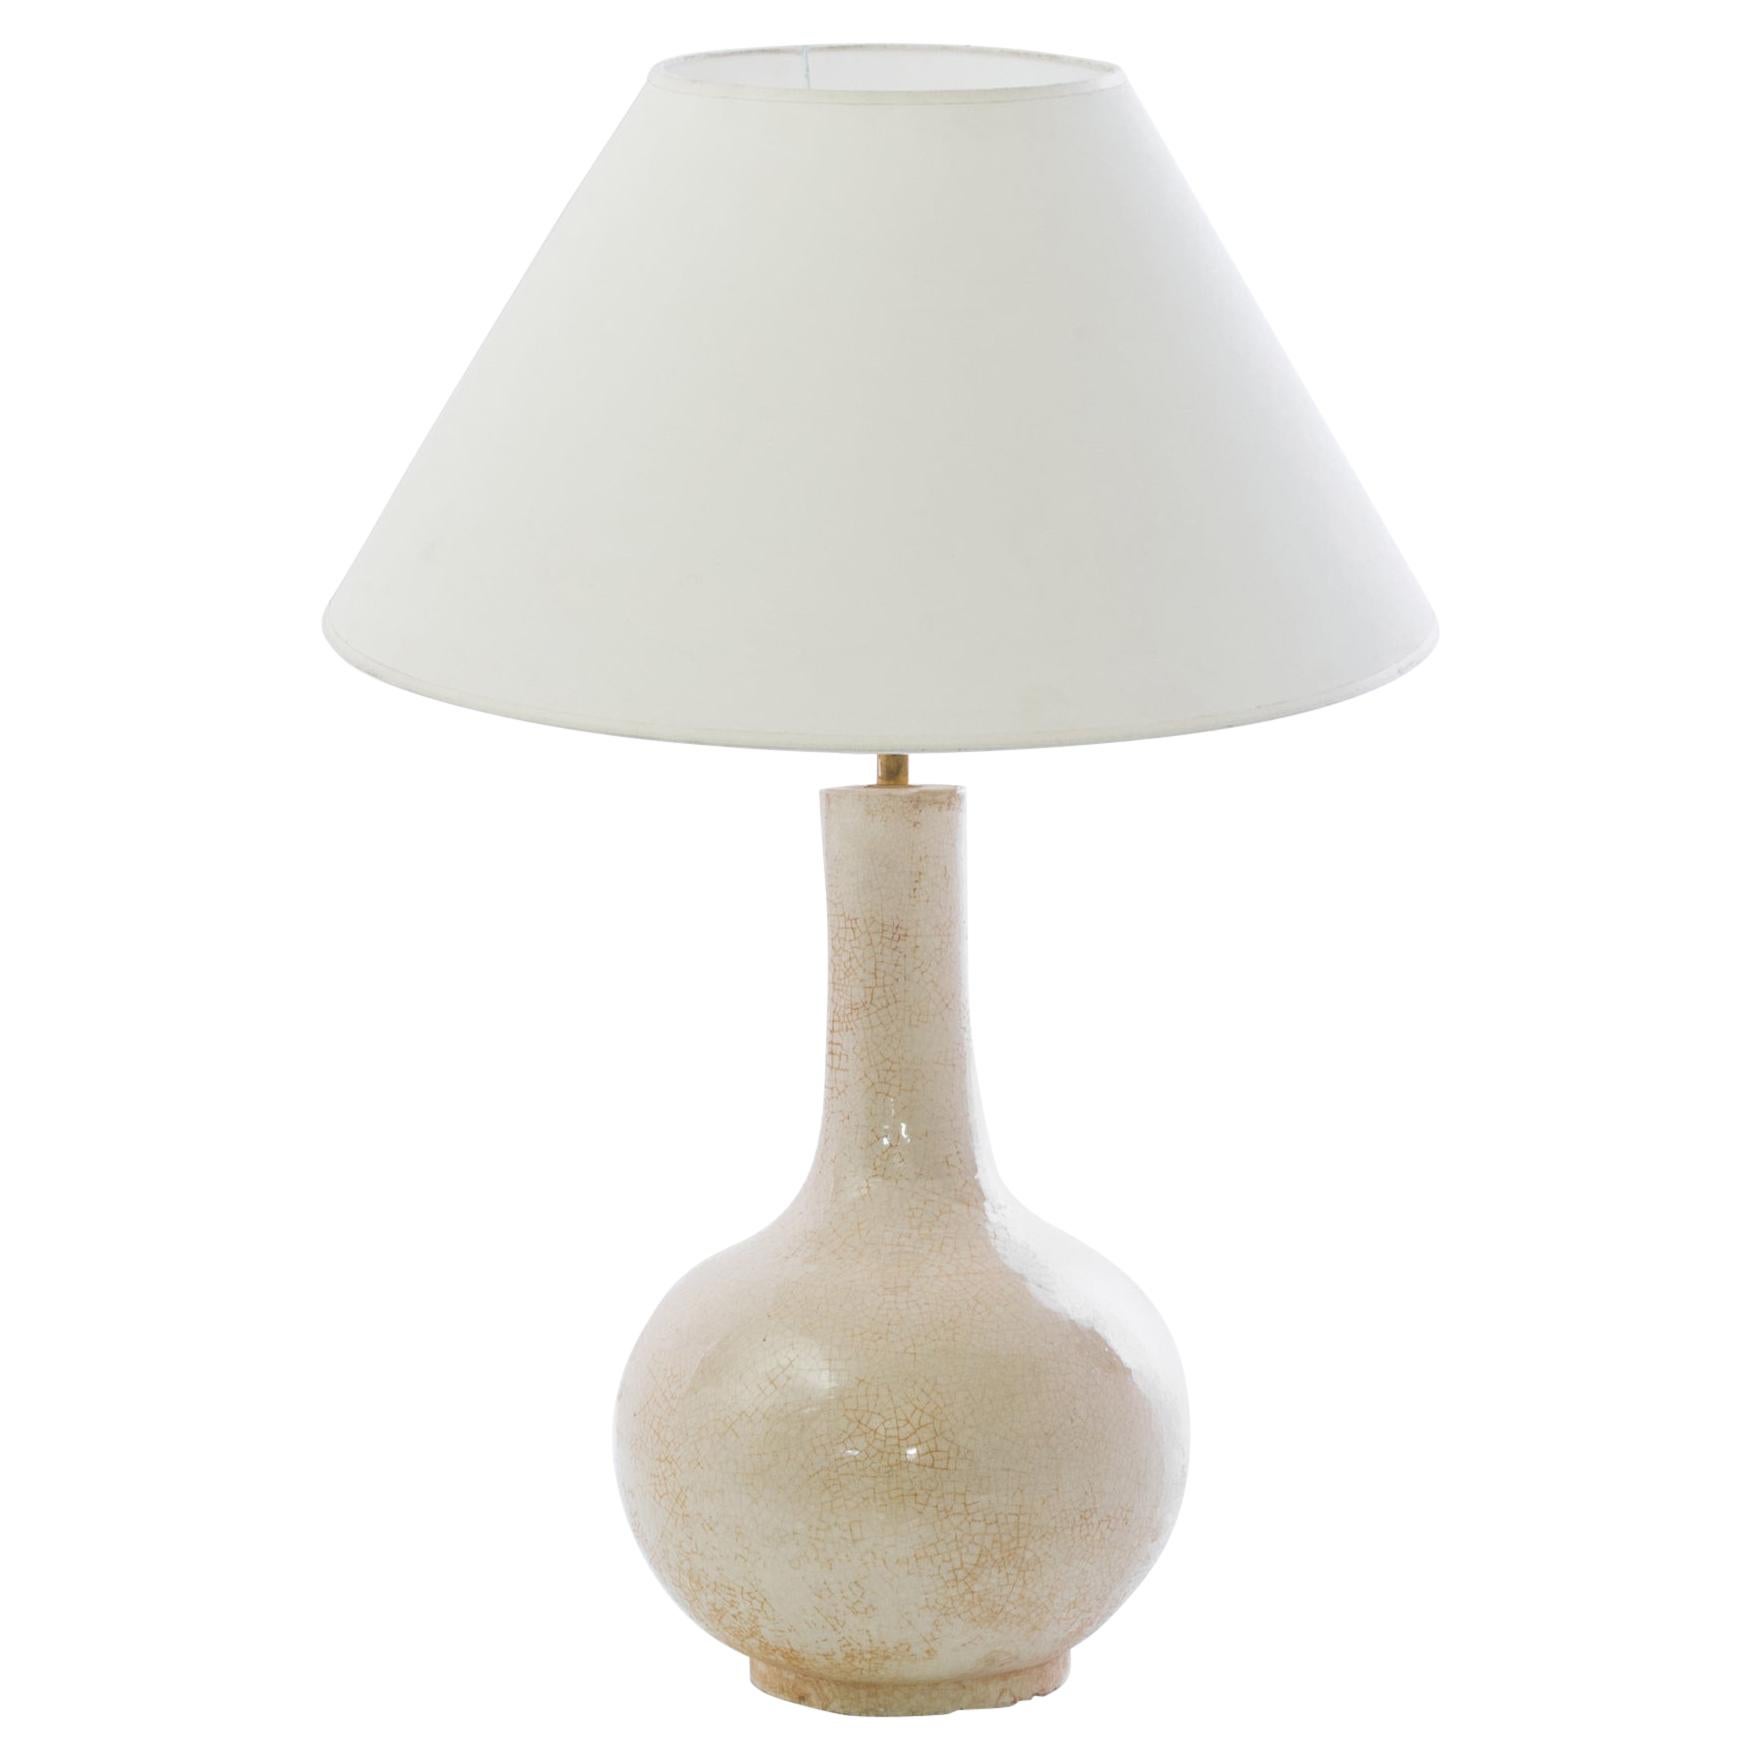 Antique Chinese Crackled Cream Ceramic Vase Table Lamp